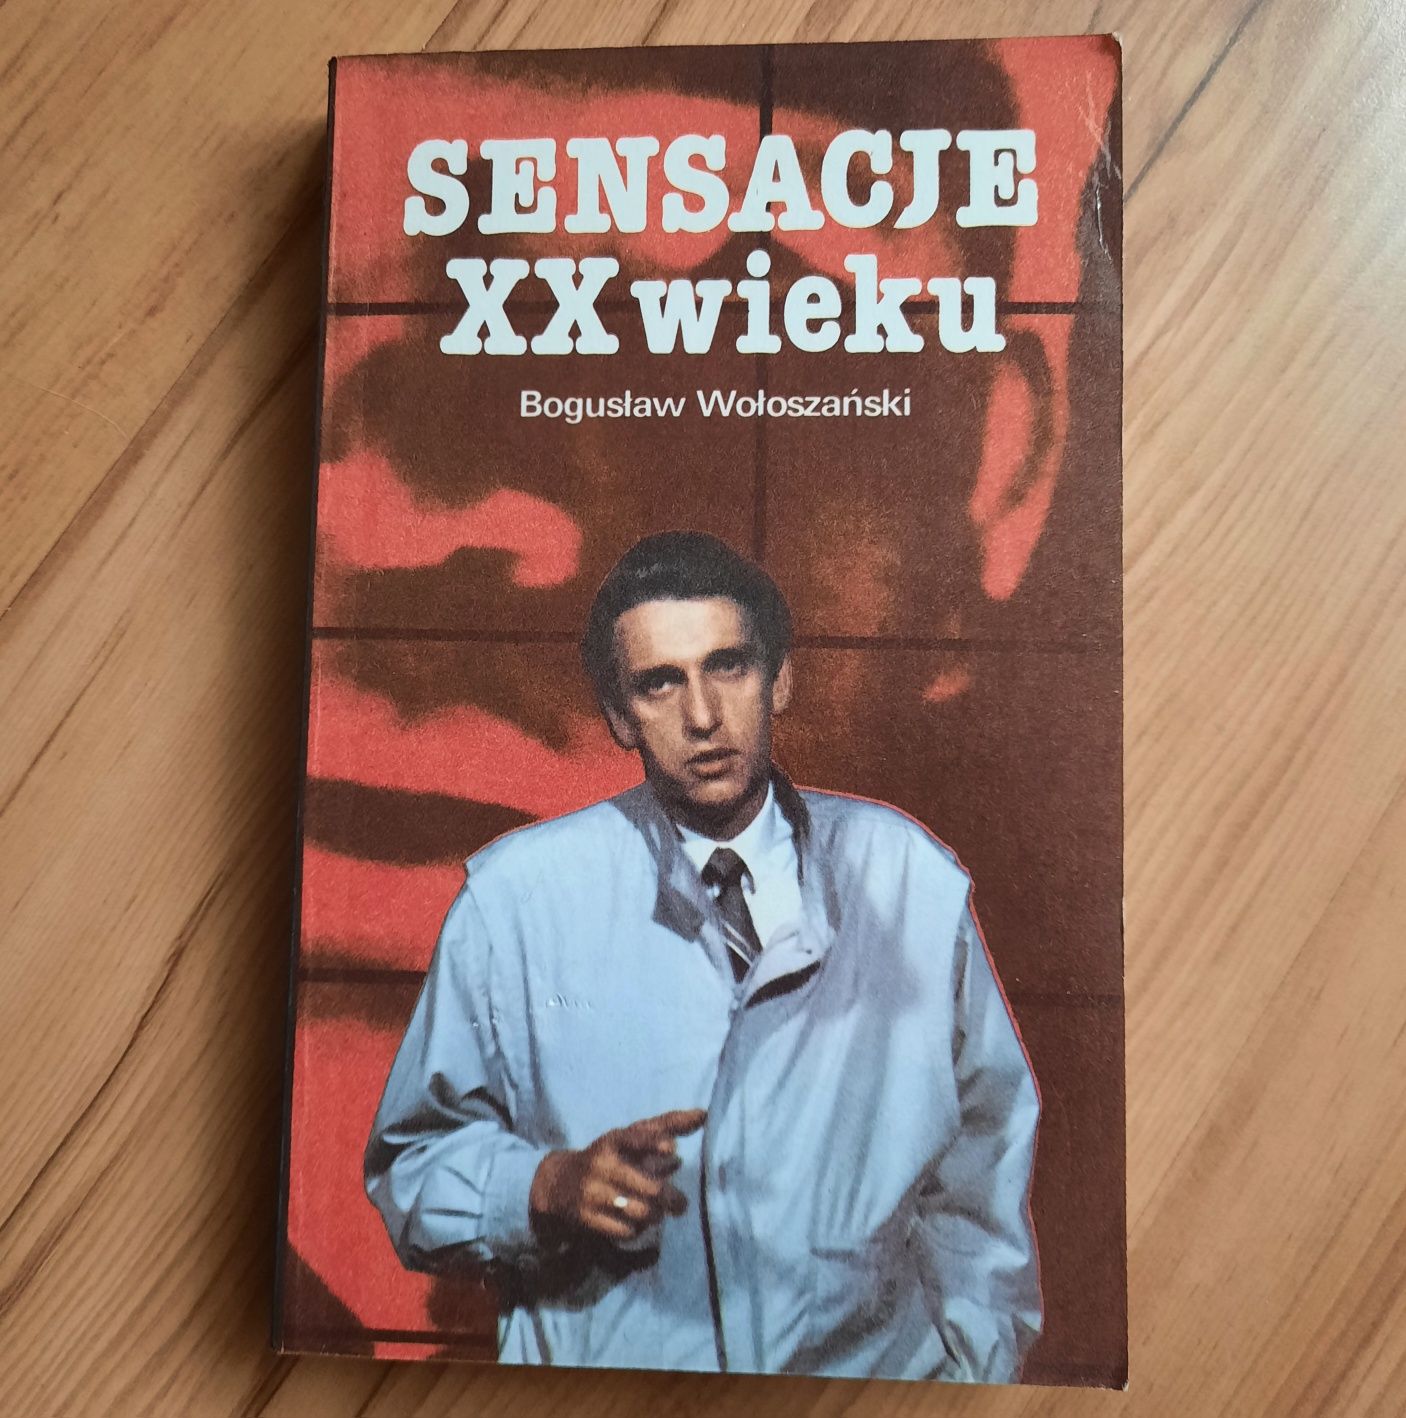 Książka "Sensacje XX wieku" Bogusław Wołoszański